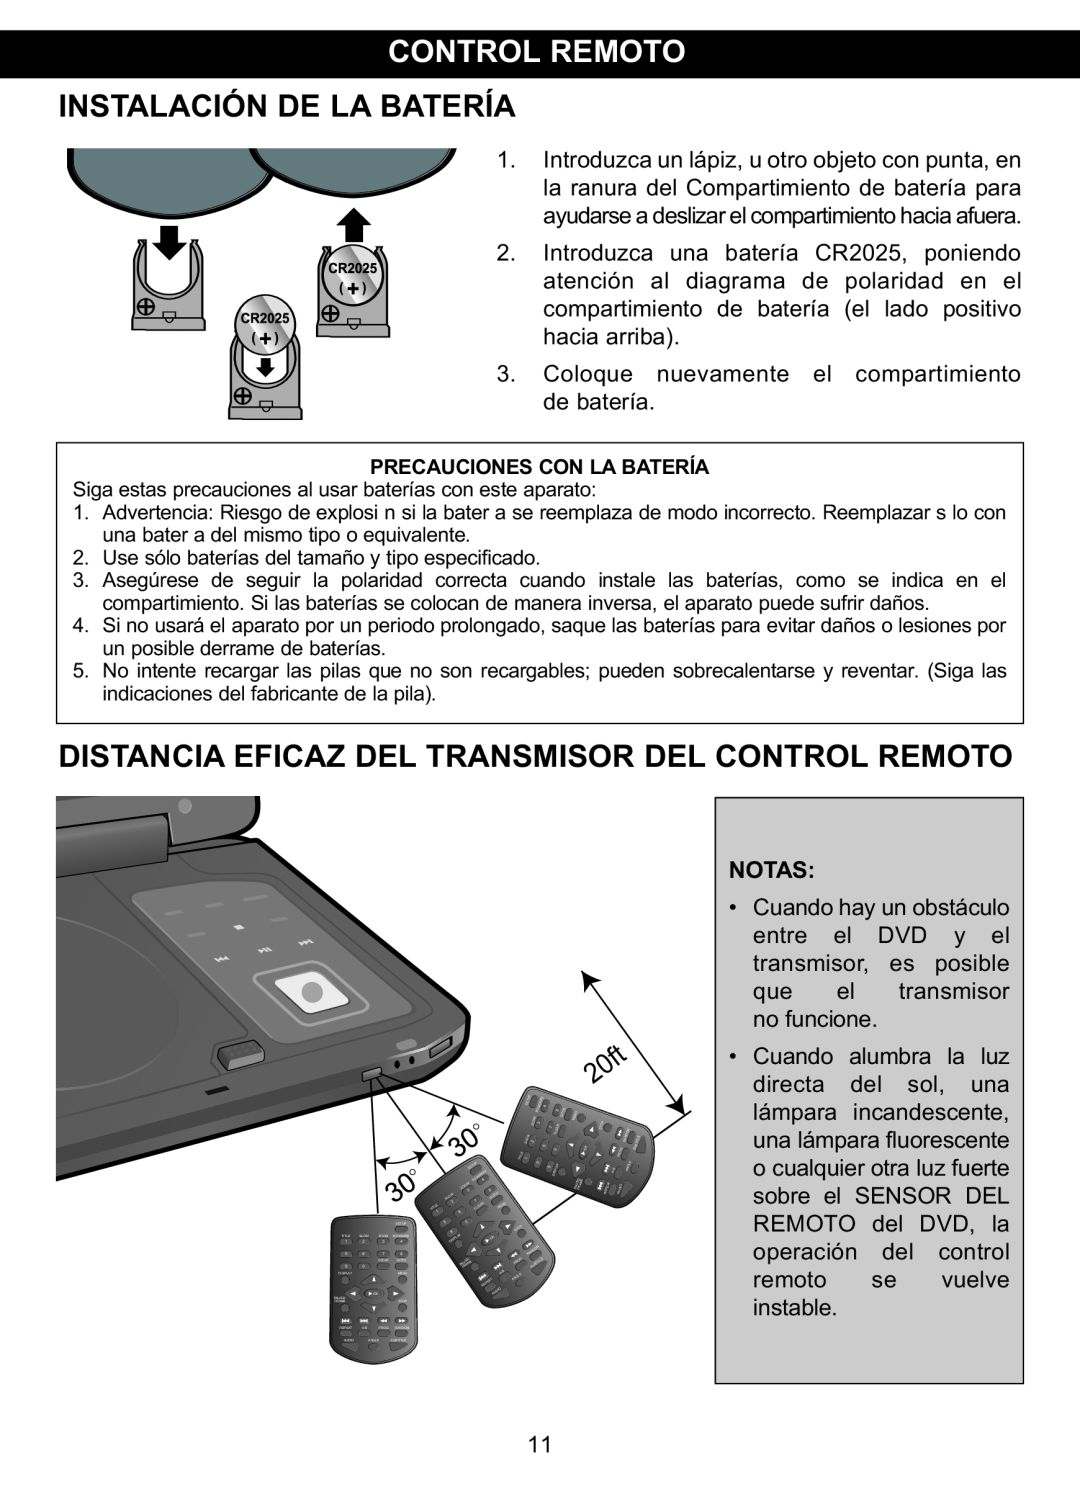 Memorex MVDP1088 manual Instalación De La Batería, Distancia Eficaz Del Transmisor Del Control Remoto 